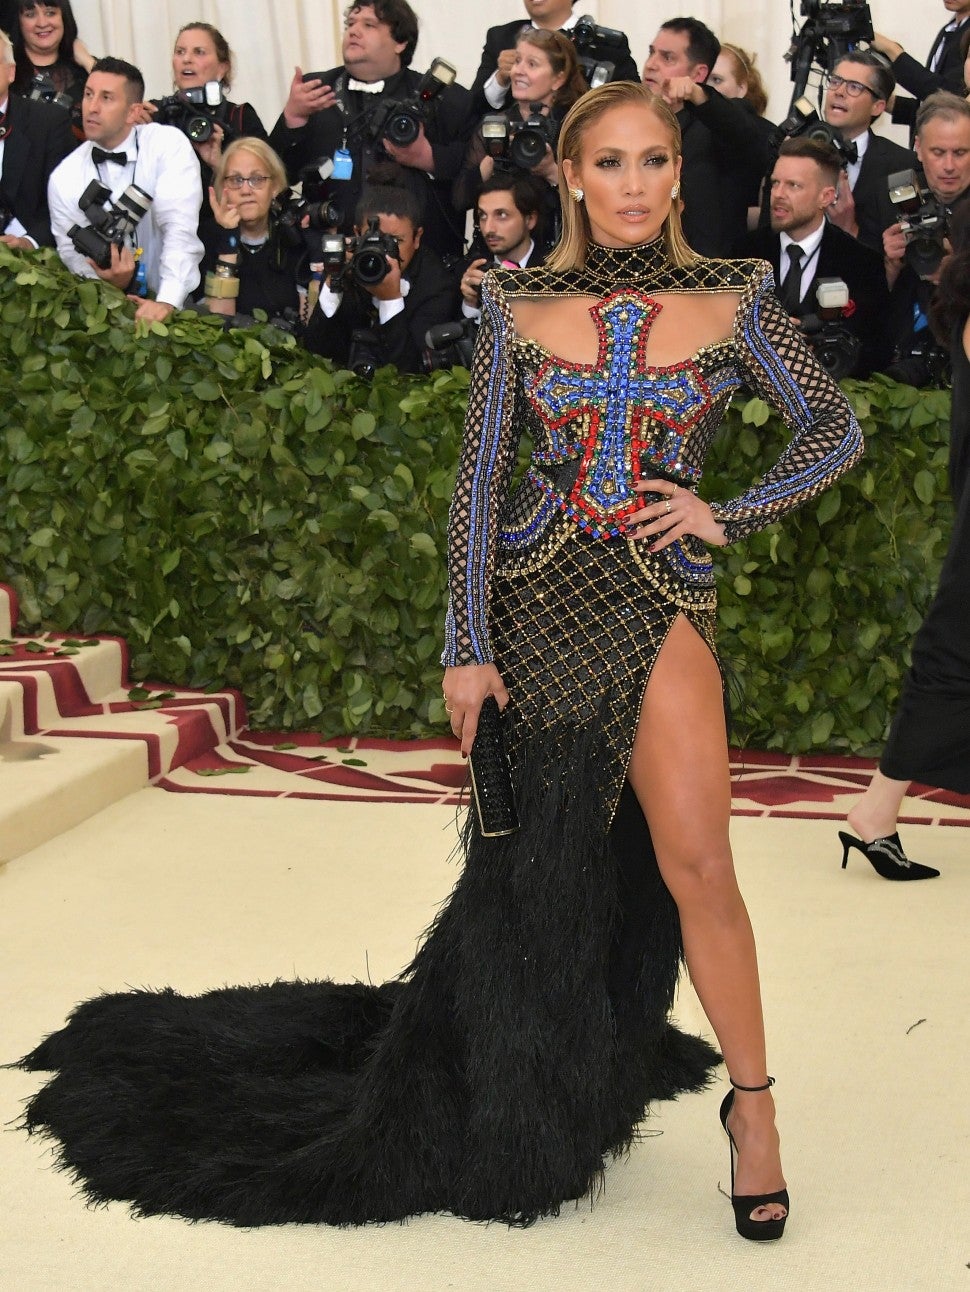 Jennifer Lopez's 12 Met Gala Looks - Photos | Entertainment Tonight